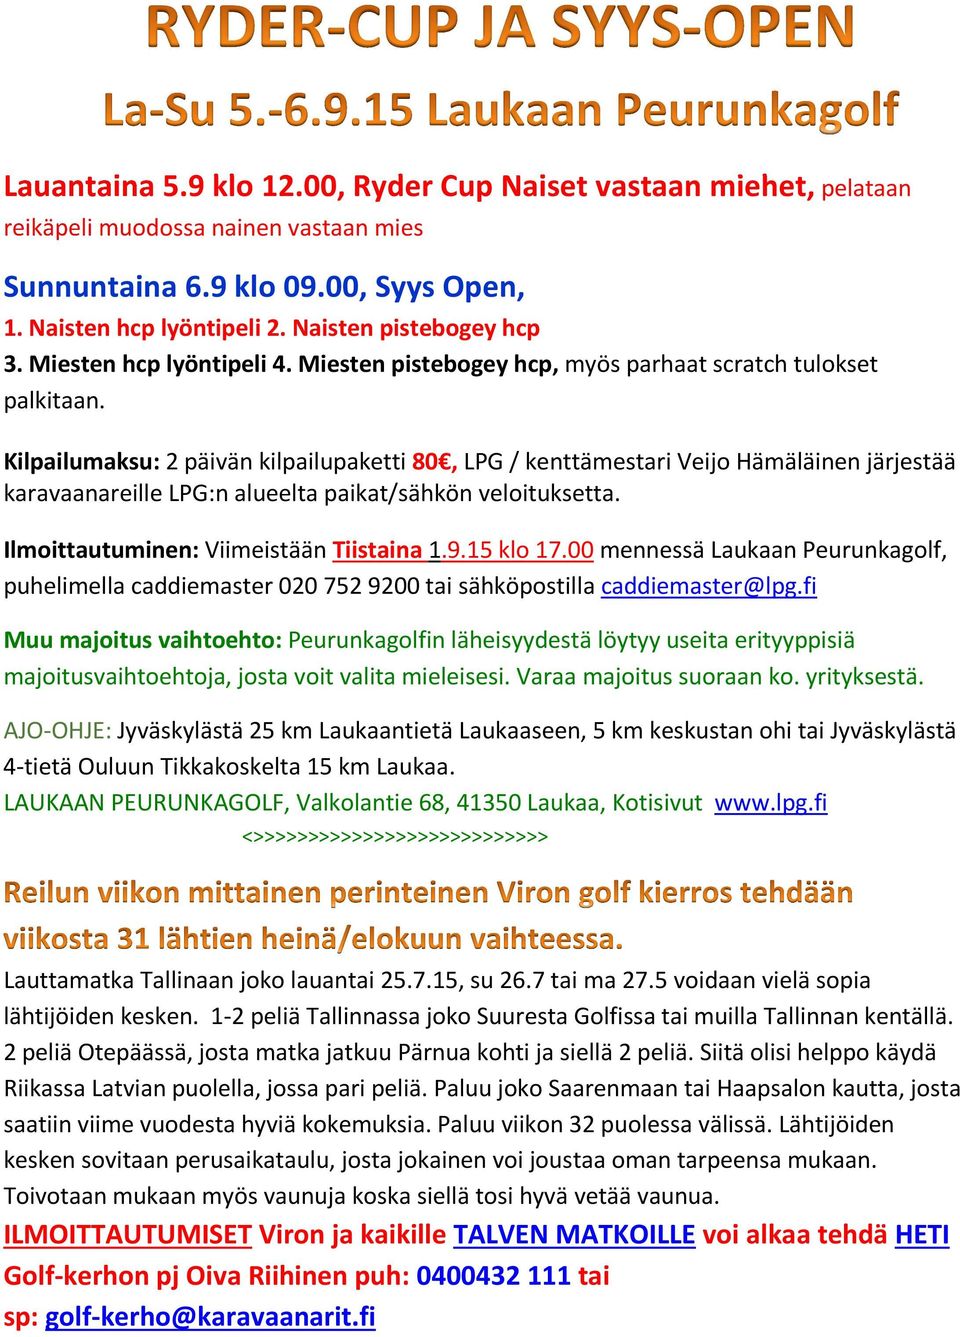 Kilpailumaksu: 2 päivän kilpailupaketti 80, LPG / kenttämestari Veijo Hämäläinen järjestää karavaanareille LPG:n alueelta paikat/sähkön veloituksetta. Ilmoittautuminen: Viimeistään Tiistaina 1.9.